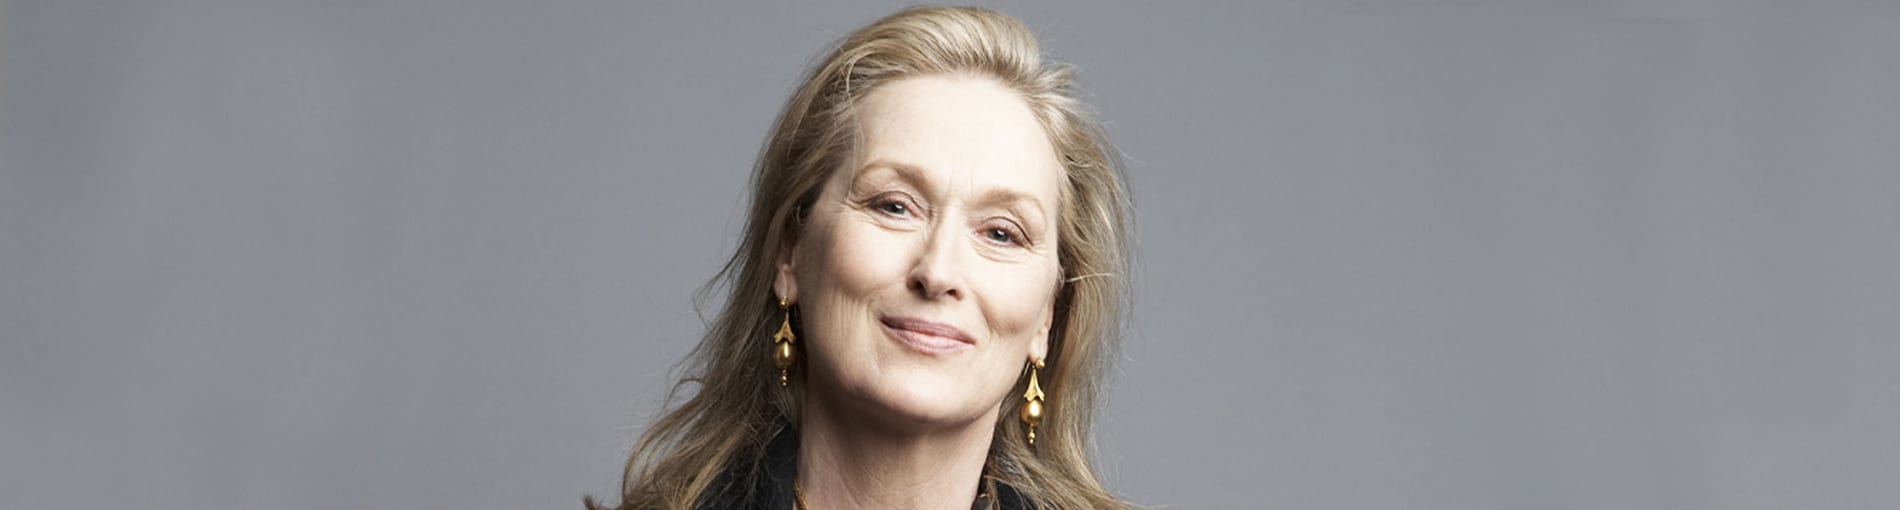 ¿Quién es Meryl Streep? Te contamos 10 curiosidades sobre ella